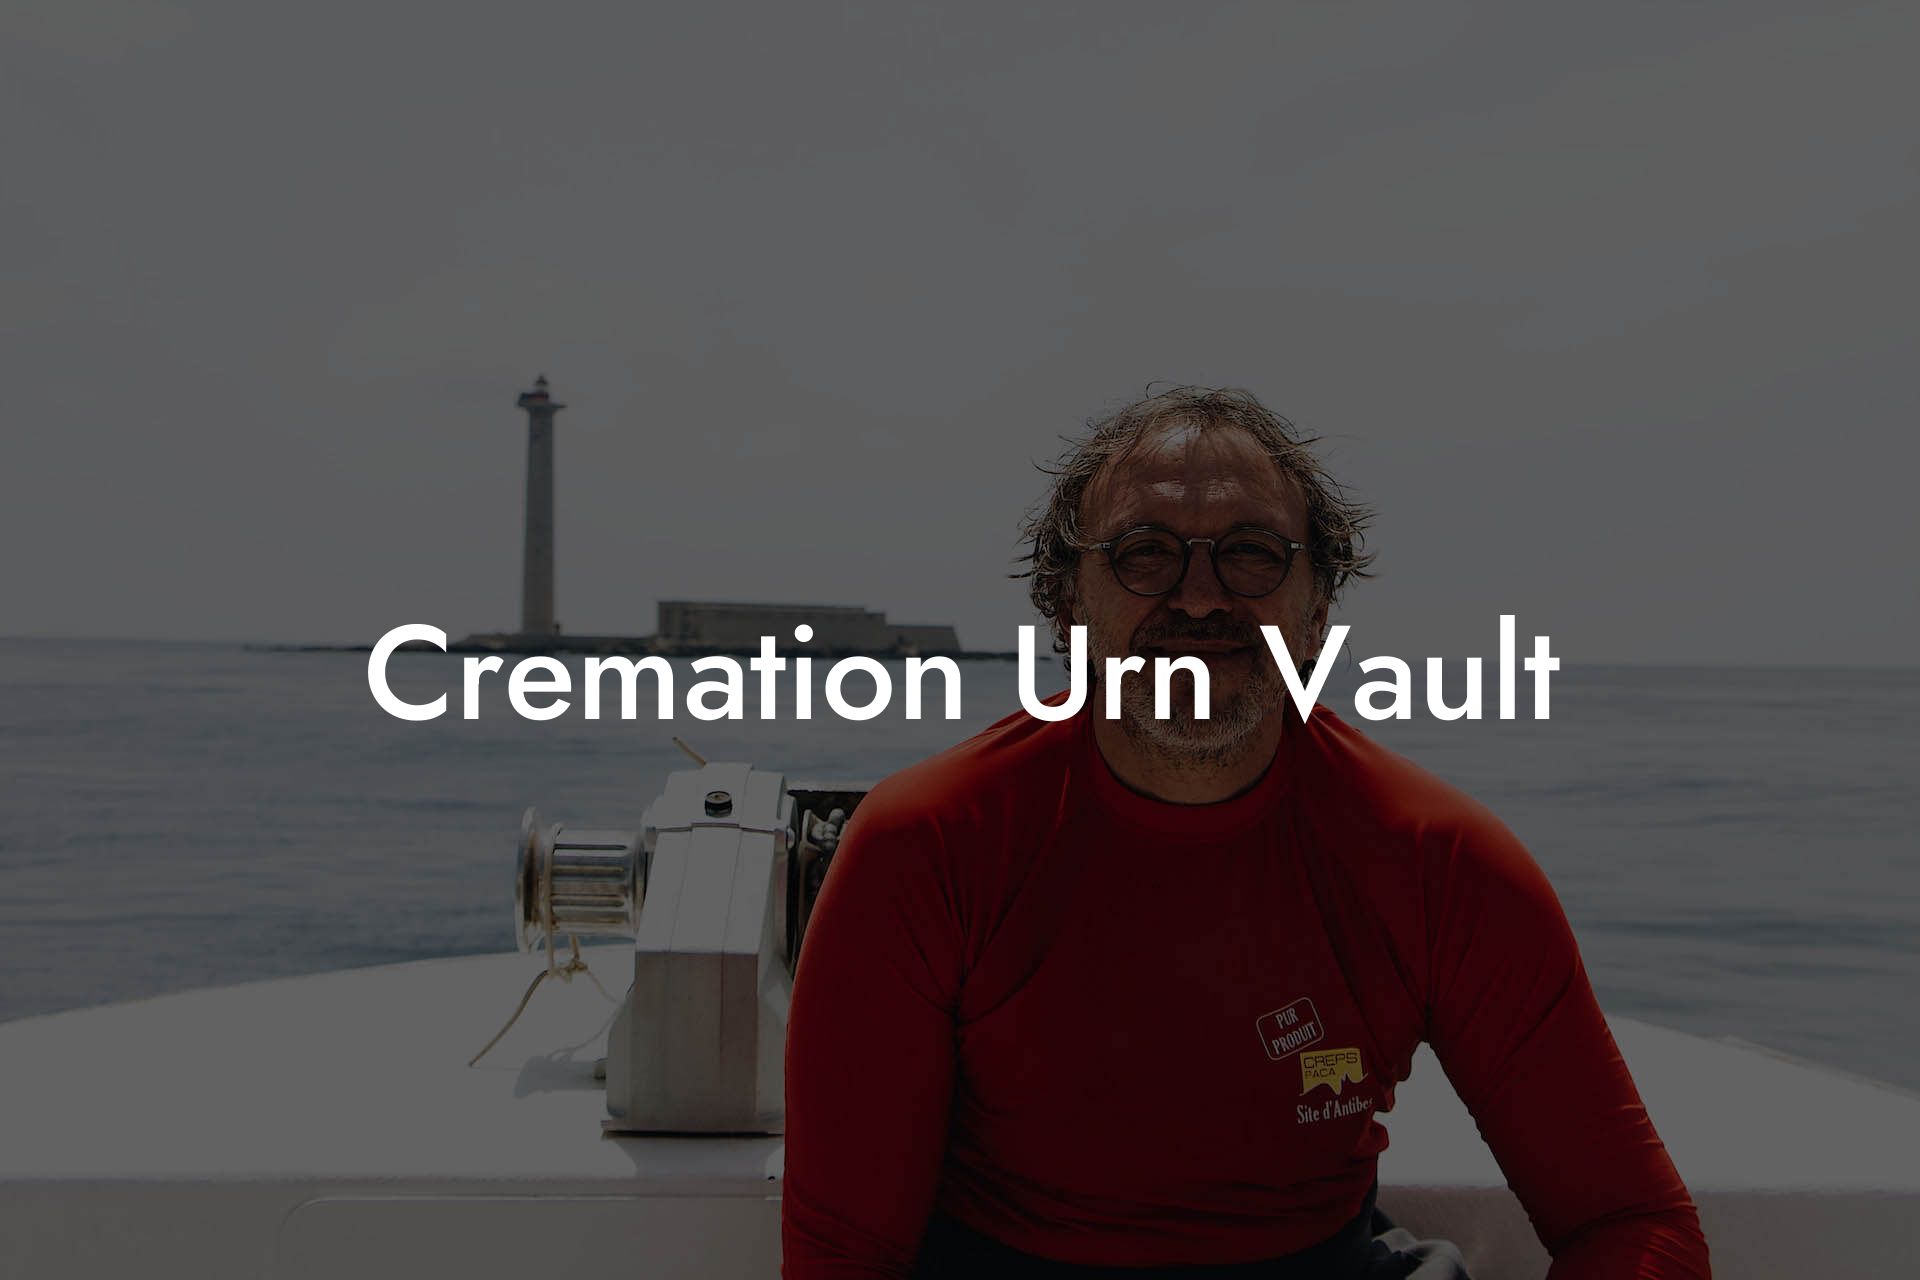 Cremation Urn Vault